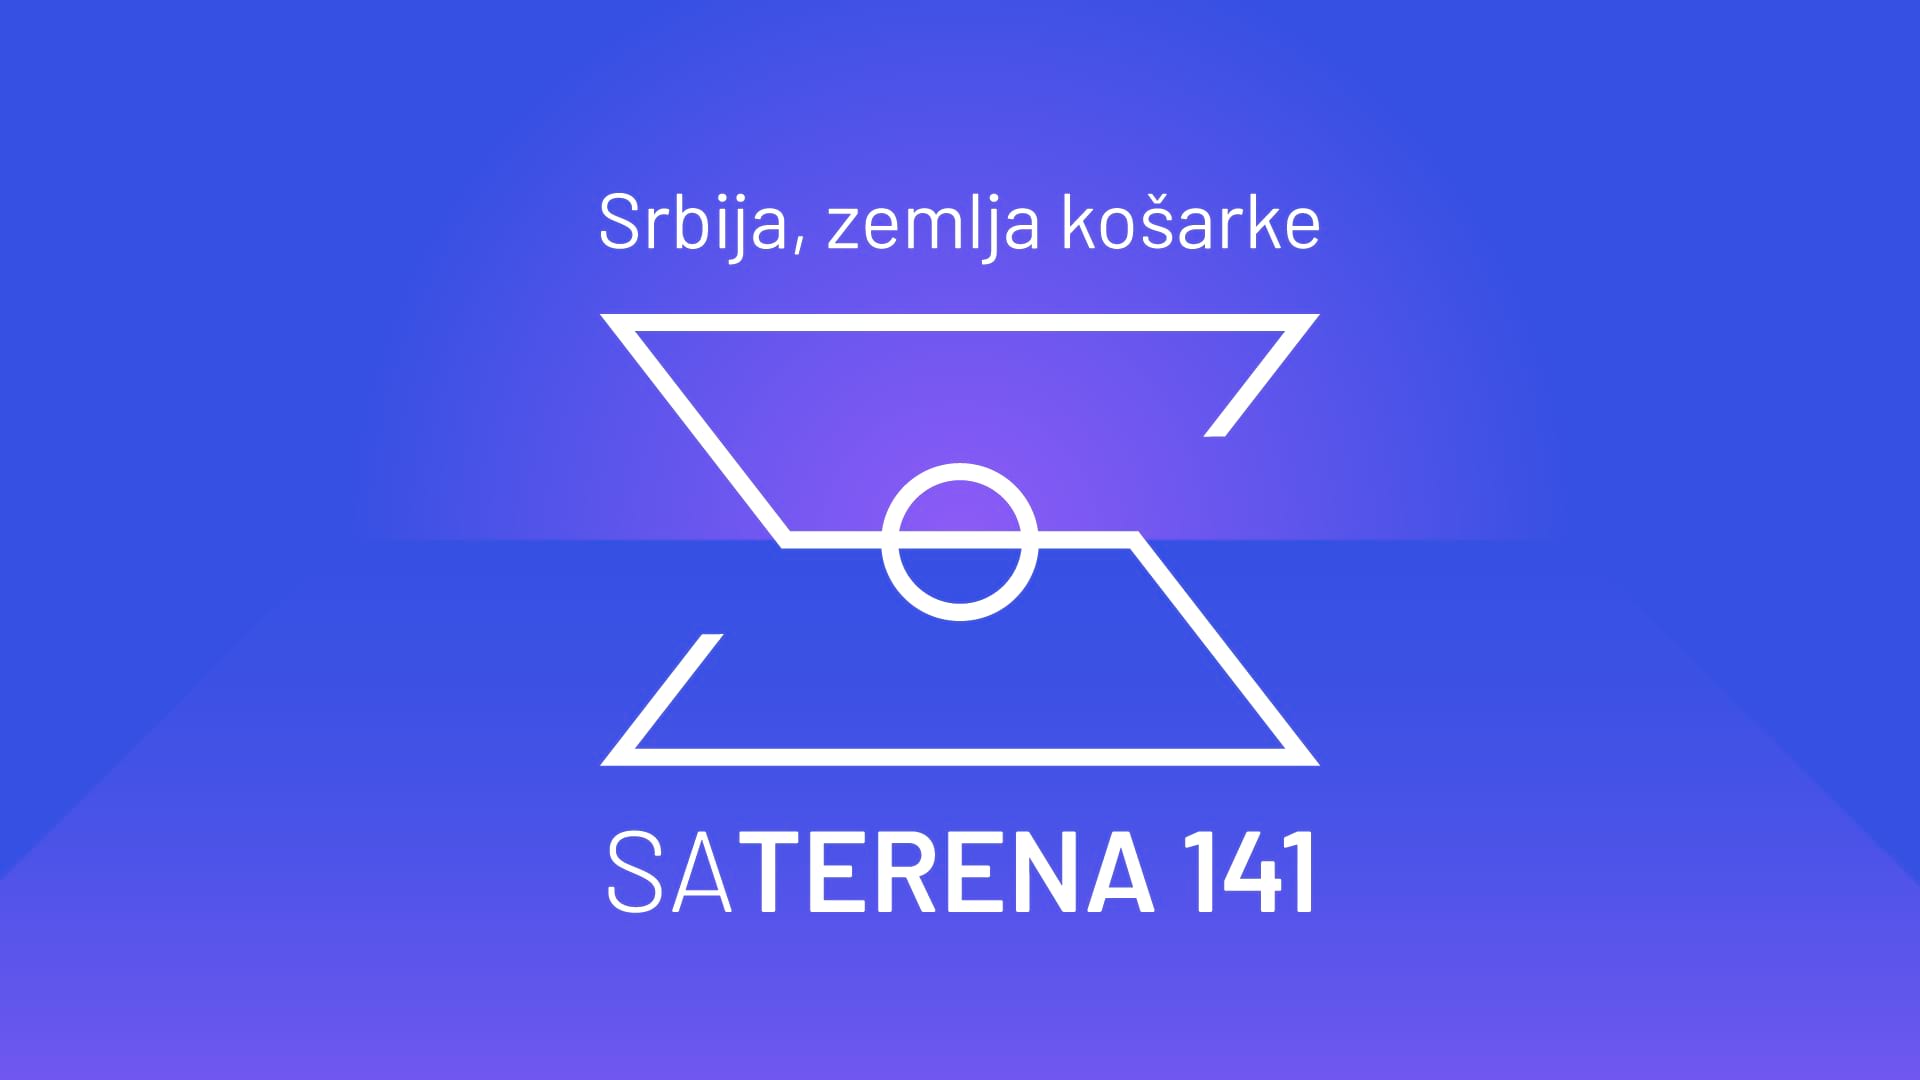 Sa terena 141: Srbija, zemlja košarke